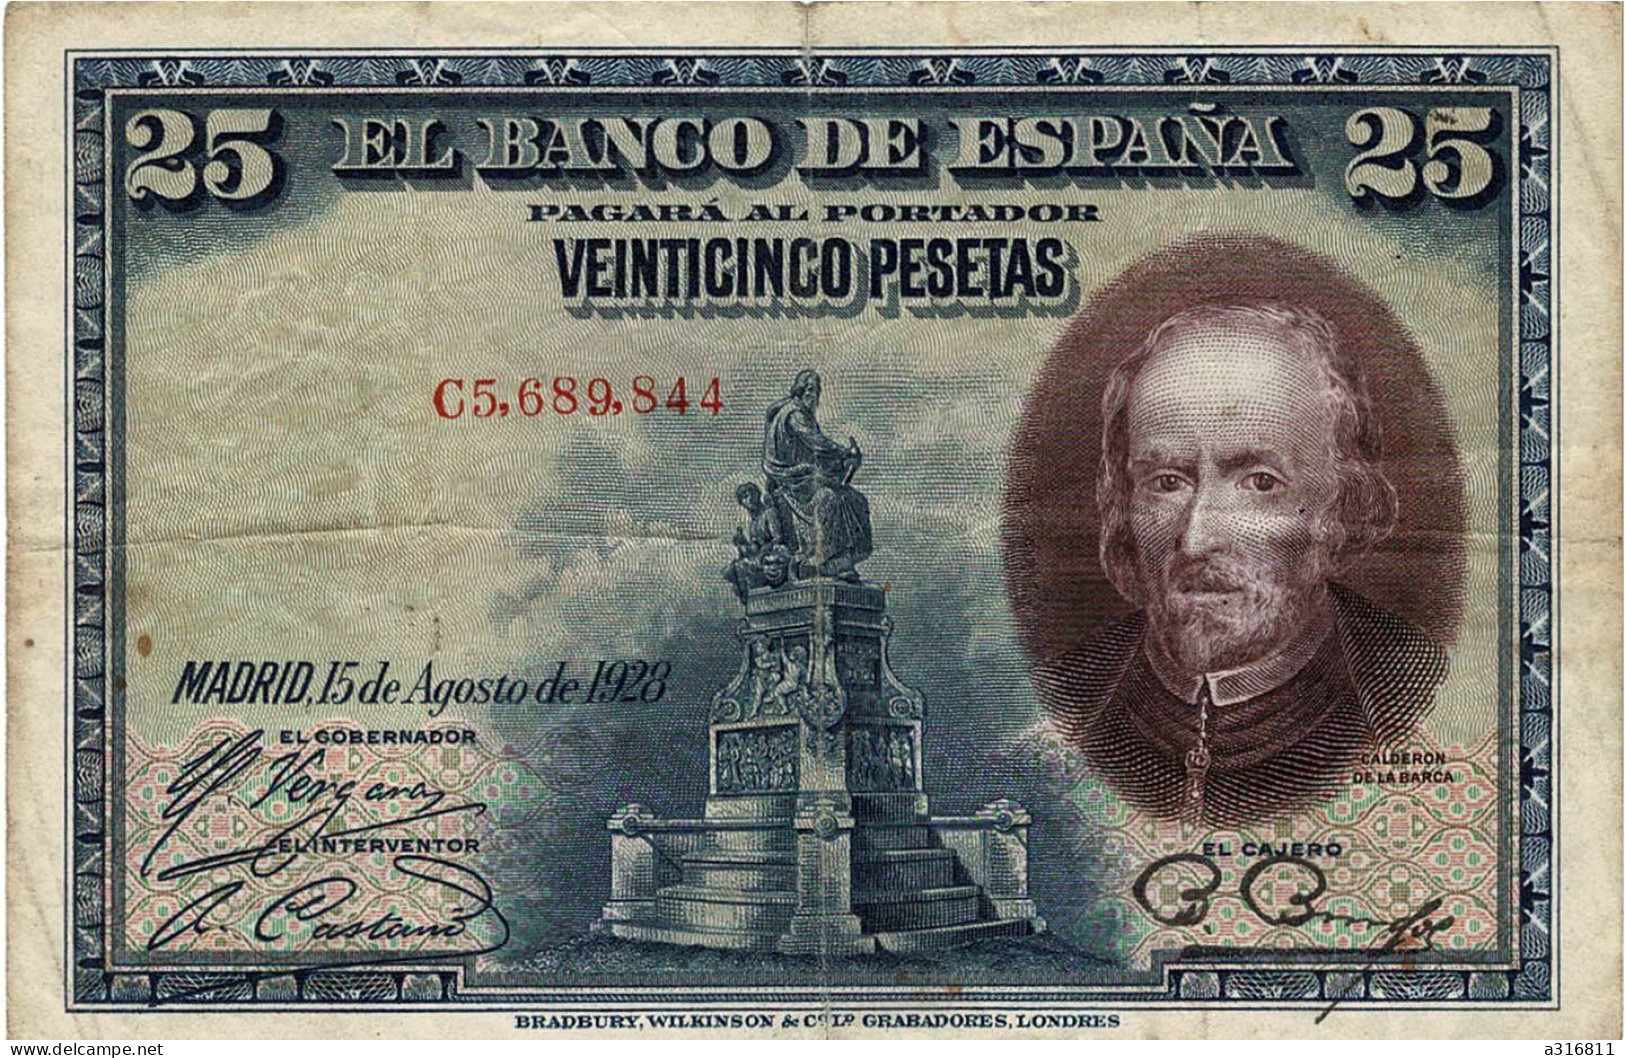 BILLET USAGE EL BANCO DE ESPANA 25 VEINTICINCO PESETAS N° E3.029.973 MADRID 15 DE AGOSTO DE 1928 PAGARA AL ESPAGNE CALDE - Other & Unclassified